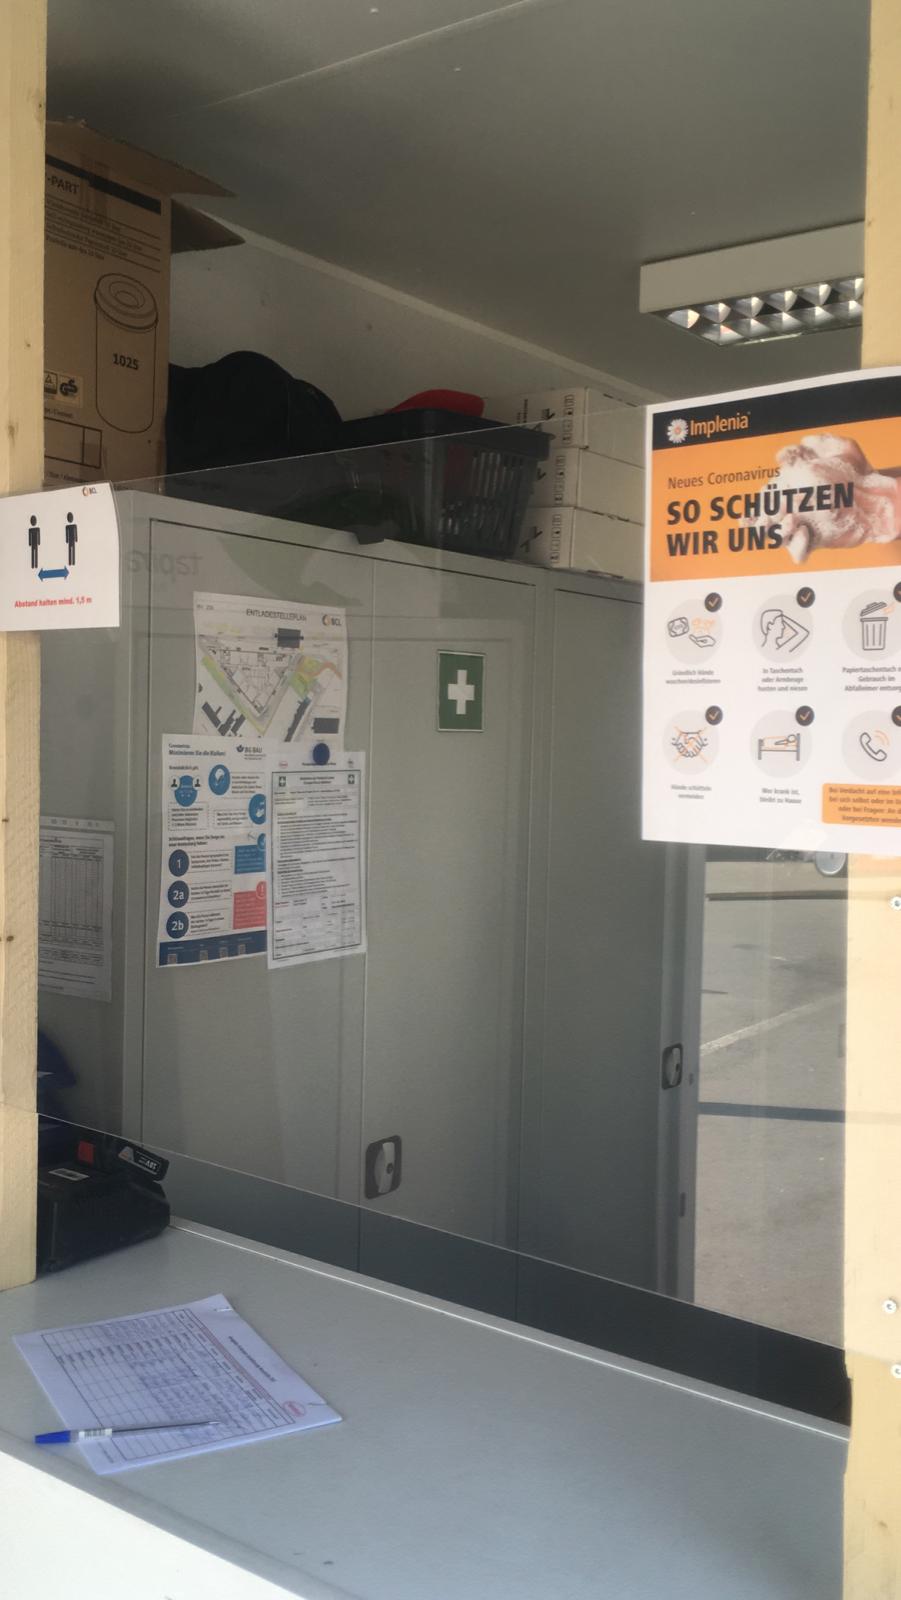 Protezione dell'igiene: nel contenitore del controllo accessi è stato installato un pannello in plexiglass, poiché non è possibile garantire la distanza minima in tutto il contenitore.